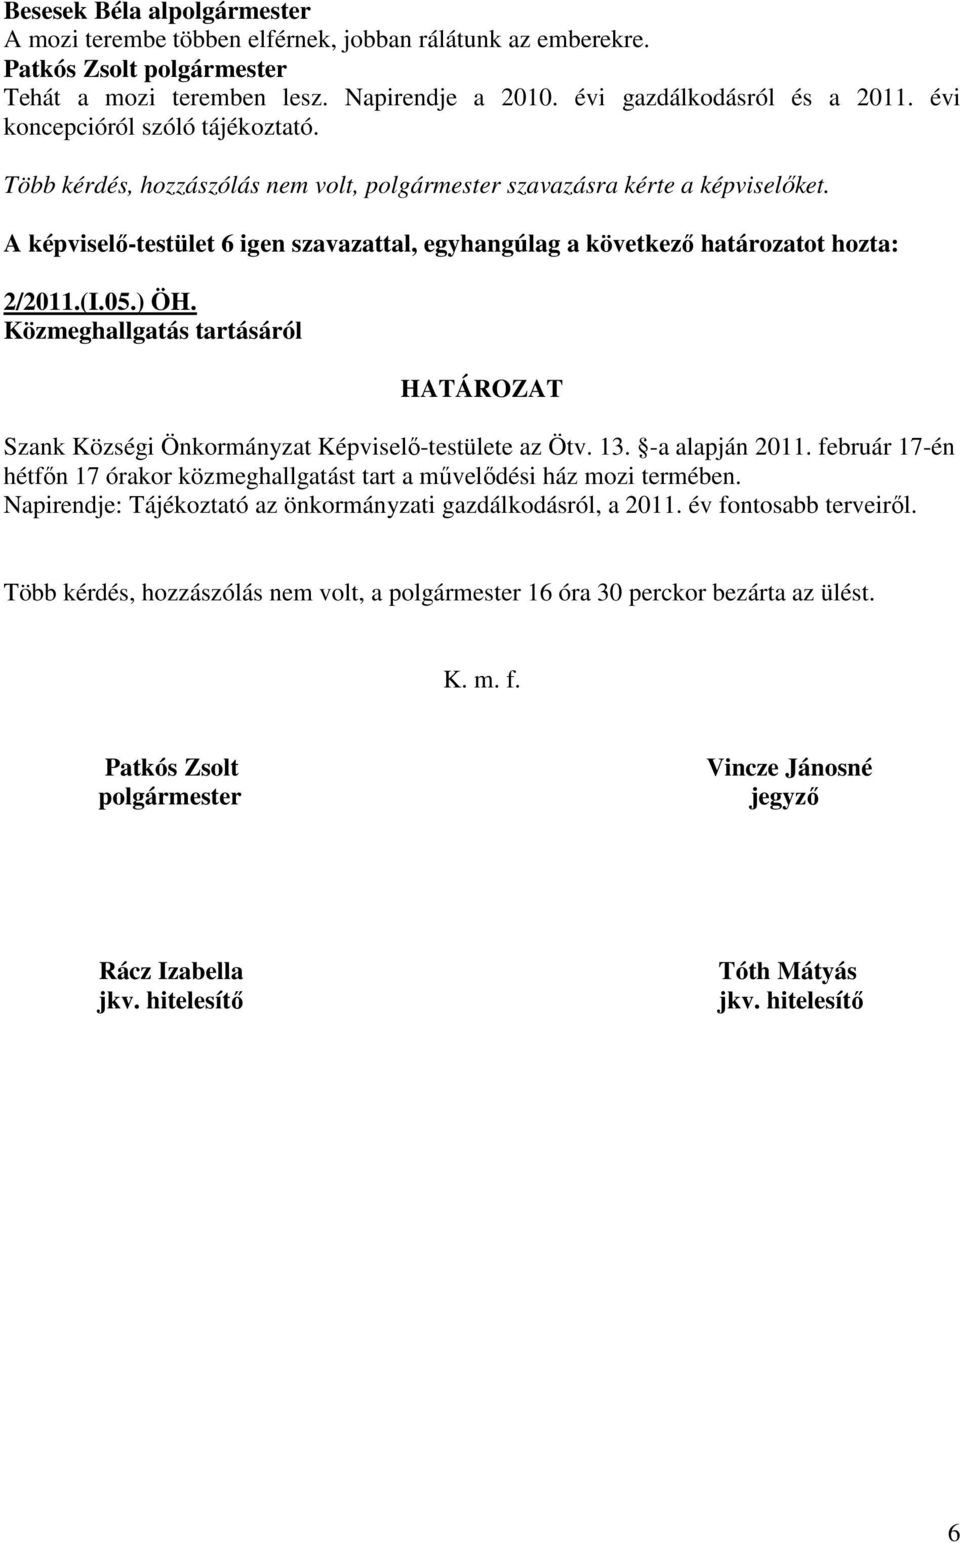 A képviselı-testület 6 igen szavazattal, egyhangúlag a következı határozatot hozta: 2/2011.(I.05.) ÖH. Közmeghallgatás tartásáról HATÁROZAT Szank Községi Önkormányzat Képviselı-testülete az Ötv. 13.